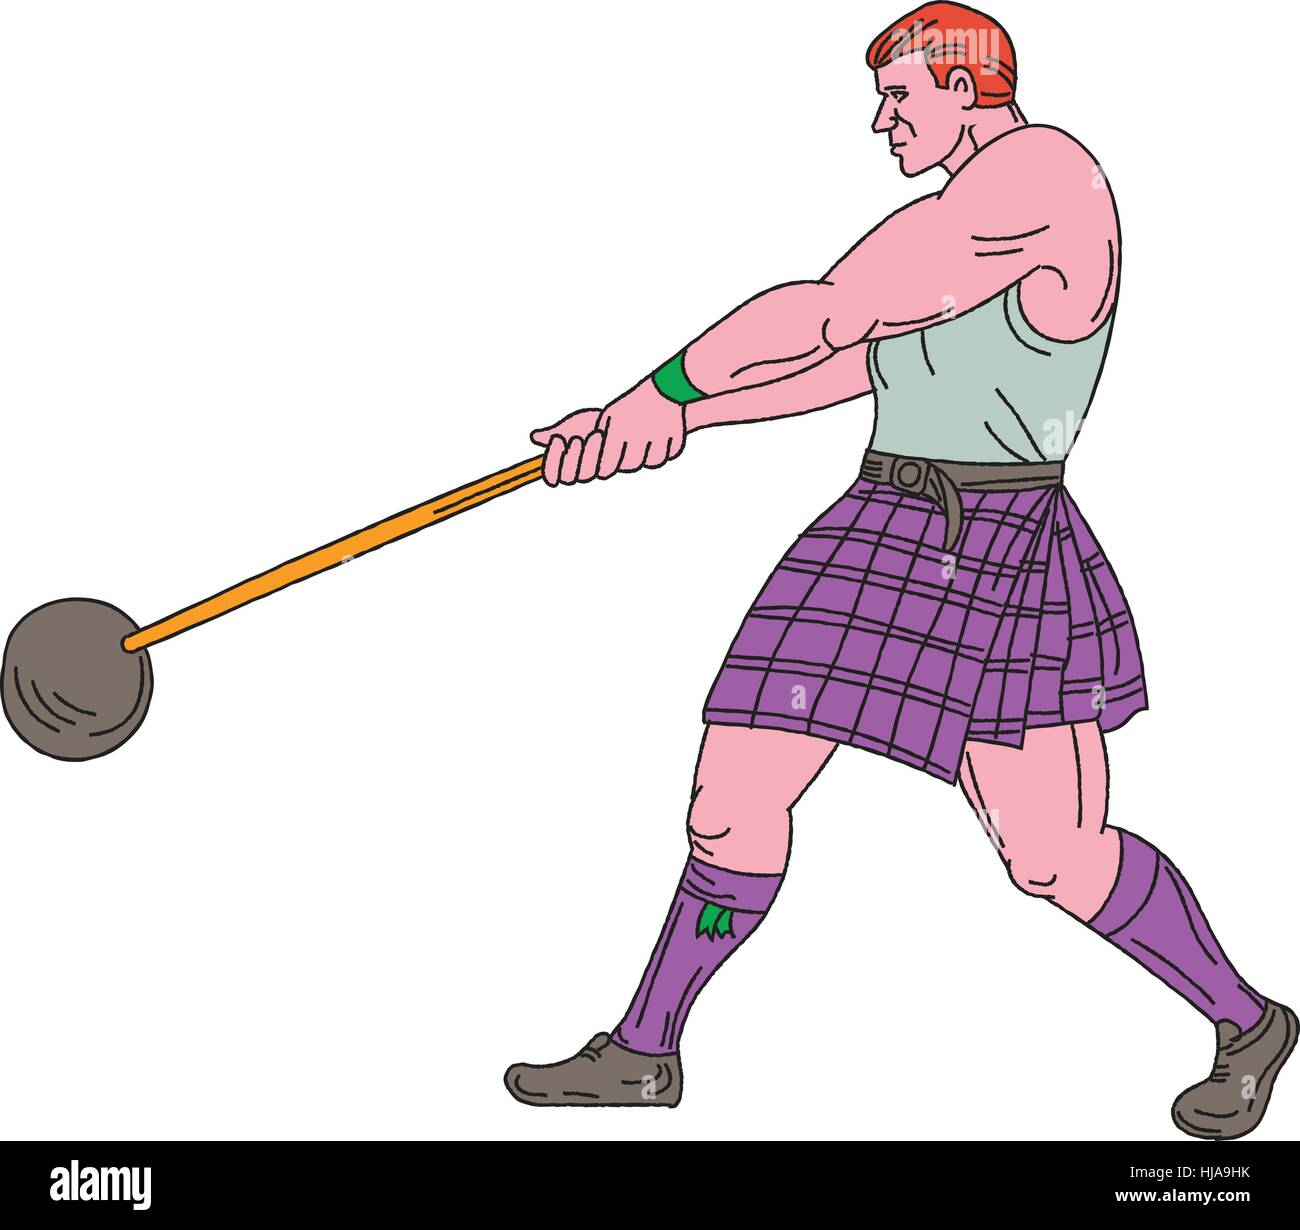 Croquis dessin illustration d'un style heavy écossaise Highland Games événement sportif consiste à lancer du poids depuis le côté isolé sur blanc Illustration de Vecteur